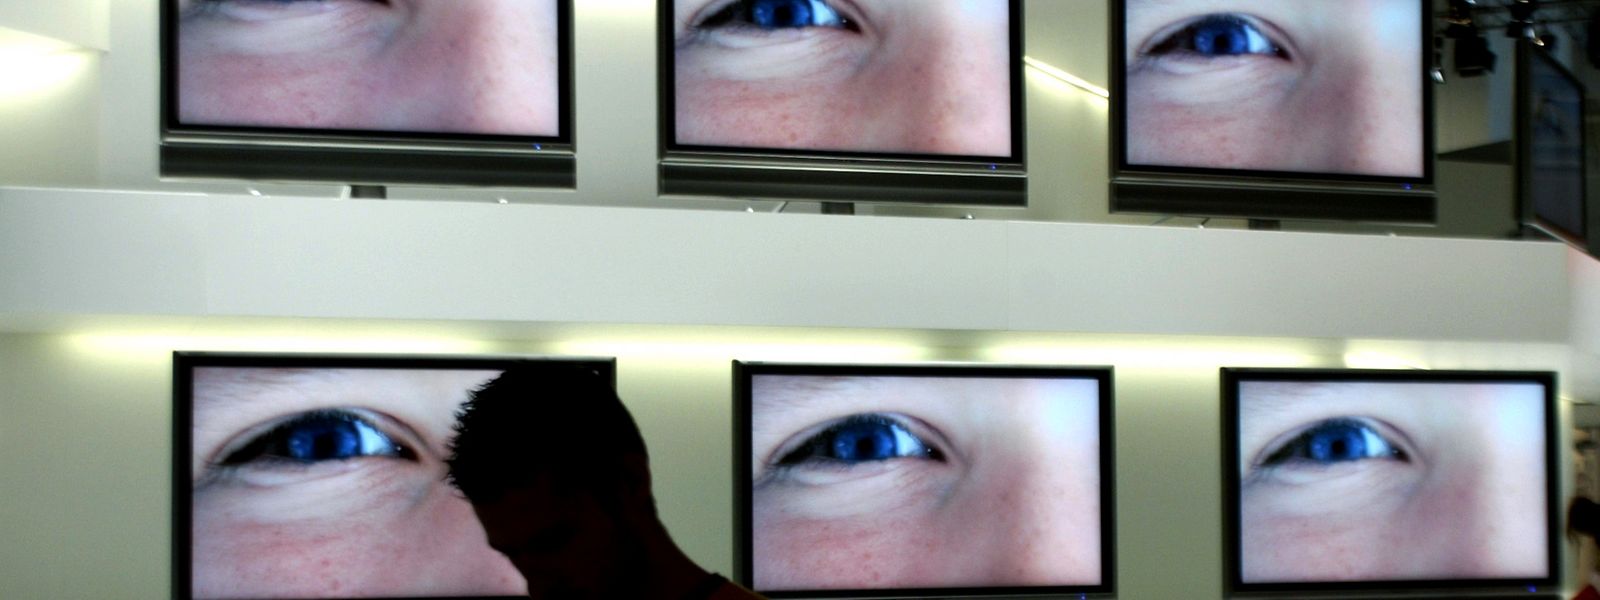 Die CIA kann den heimischen Fernseher mit Webcam ins heimische Wohnzimmer schauen lassen - behauptet Wikileaks.